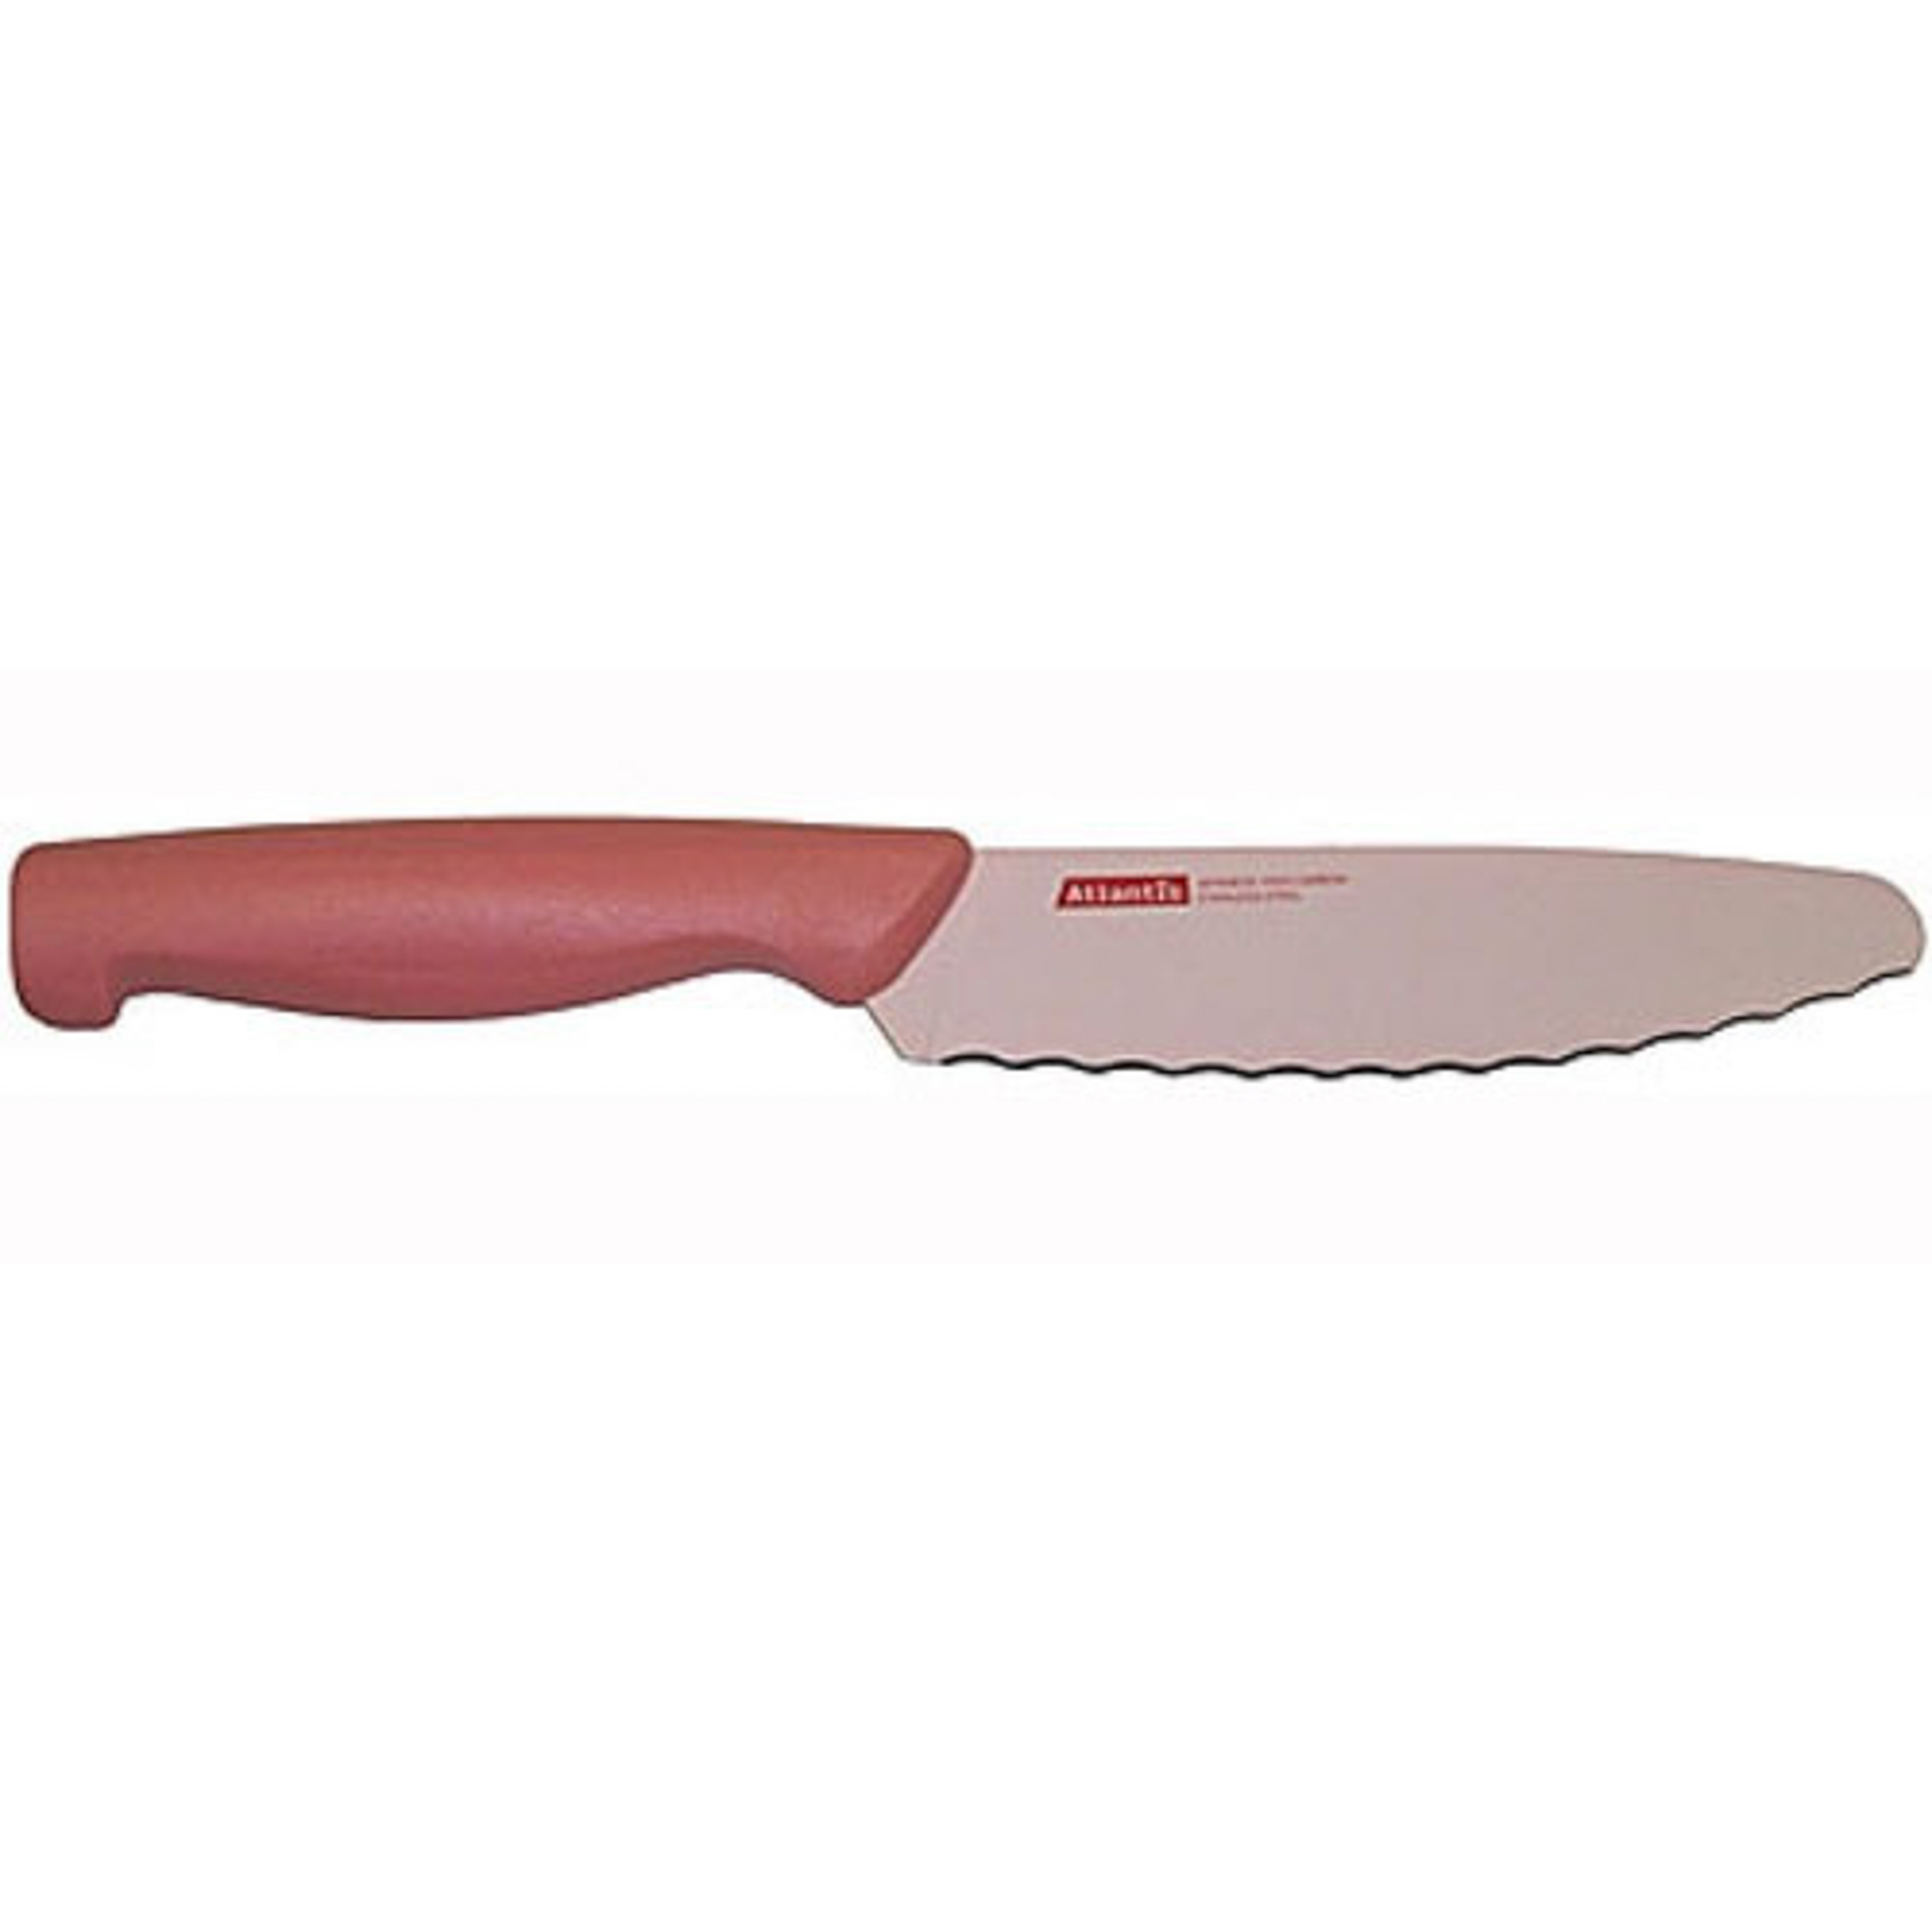 нож atlantis c037 Нож универсальный 15см розовый Atlantis